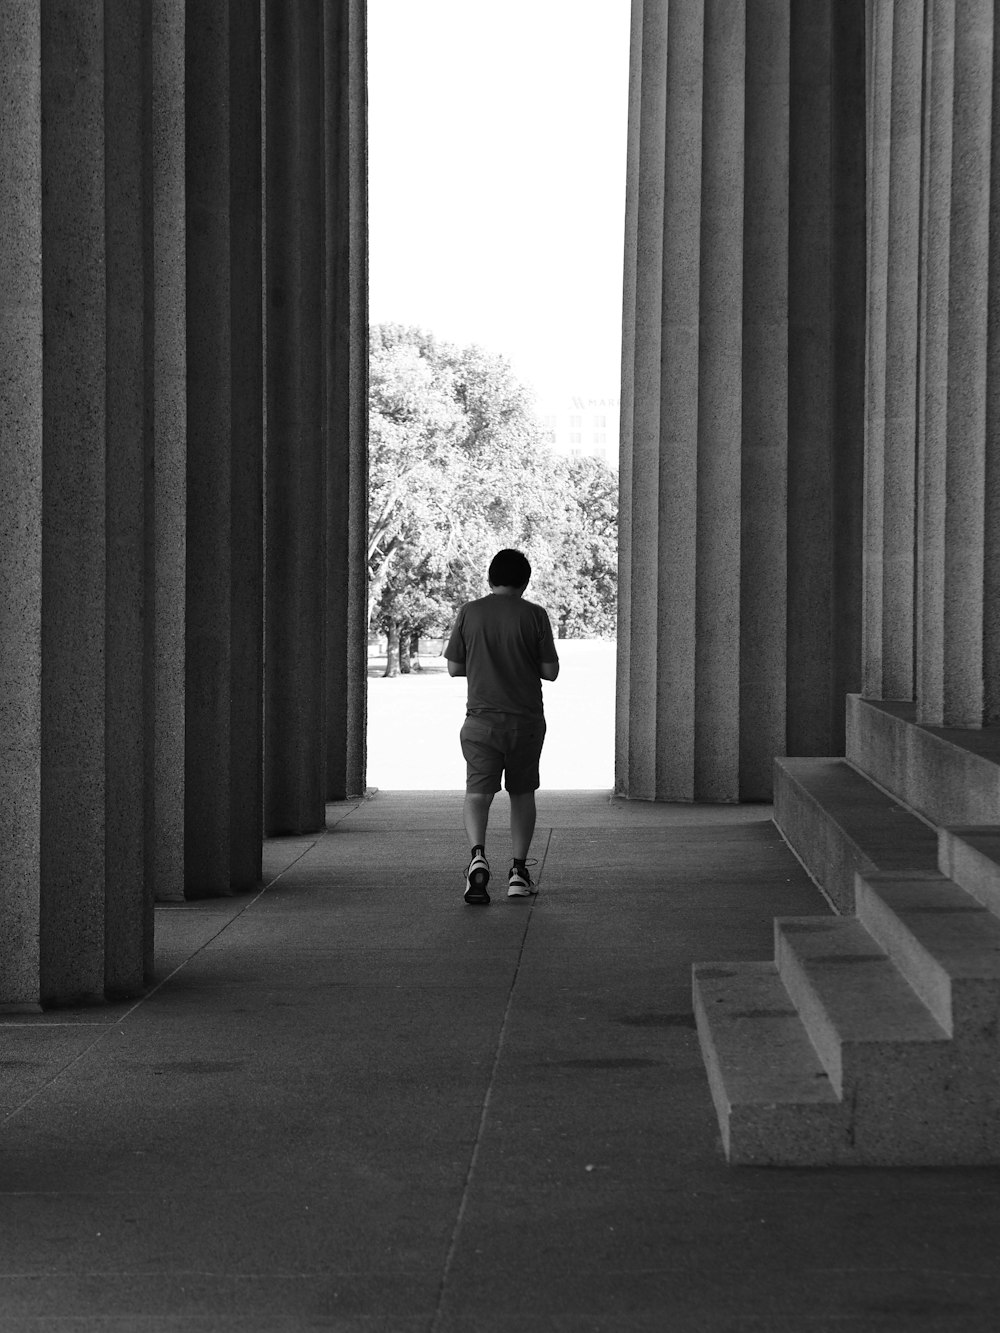 a man walking down a sidewalk next to tall pillars